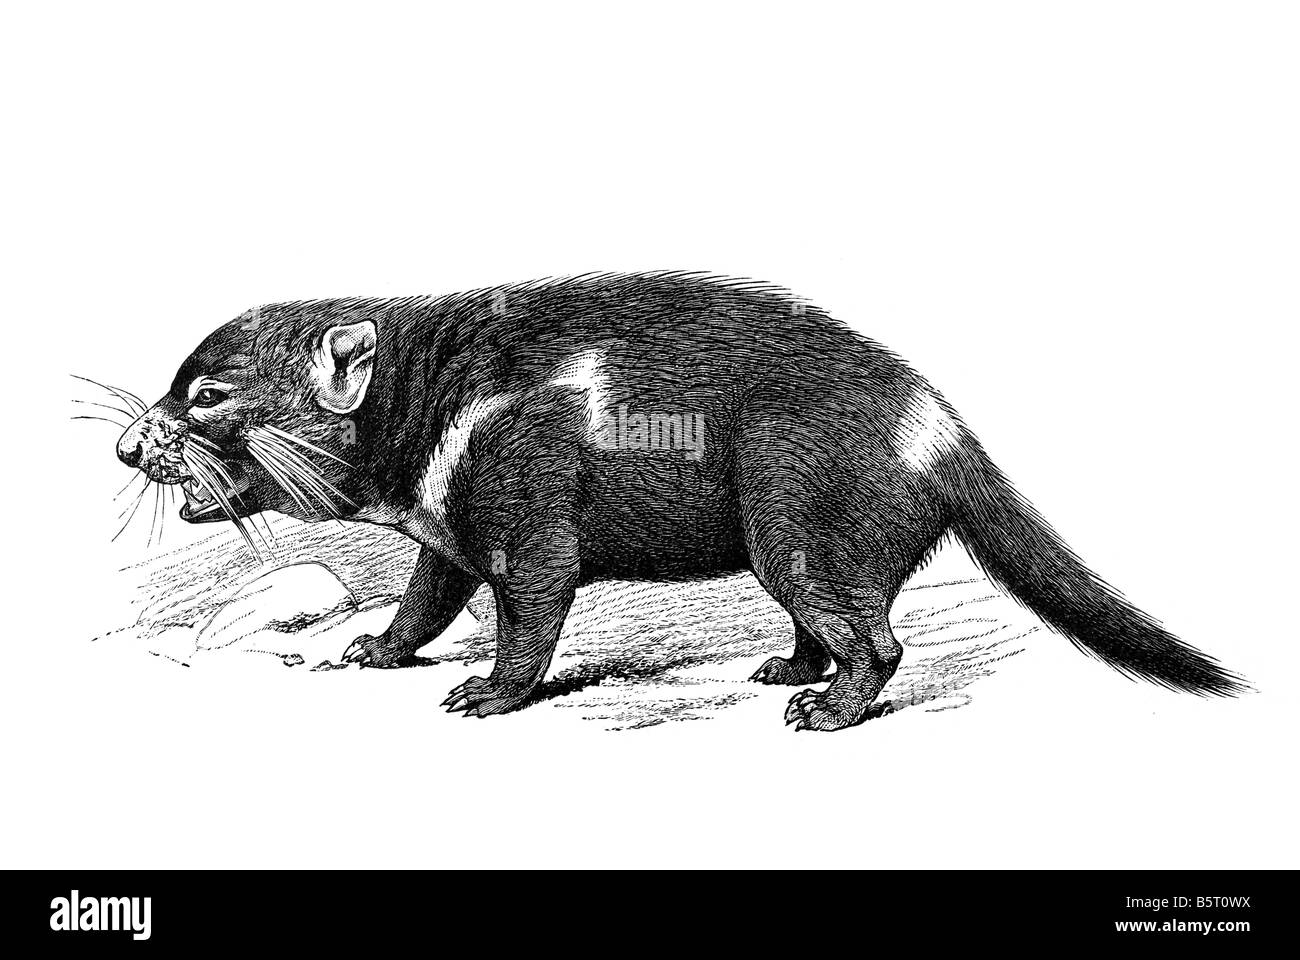 El diablo de tasmania Sarcophilus harrisii el diablo marsupiales carnívoros. Foto de stock